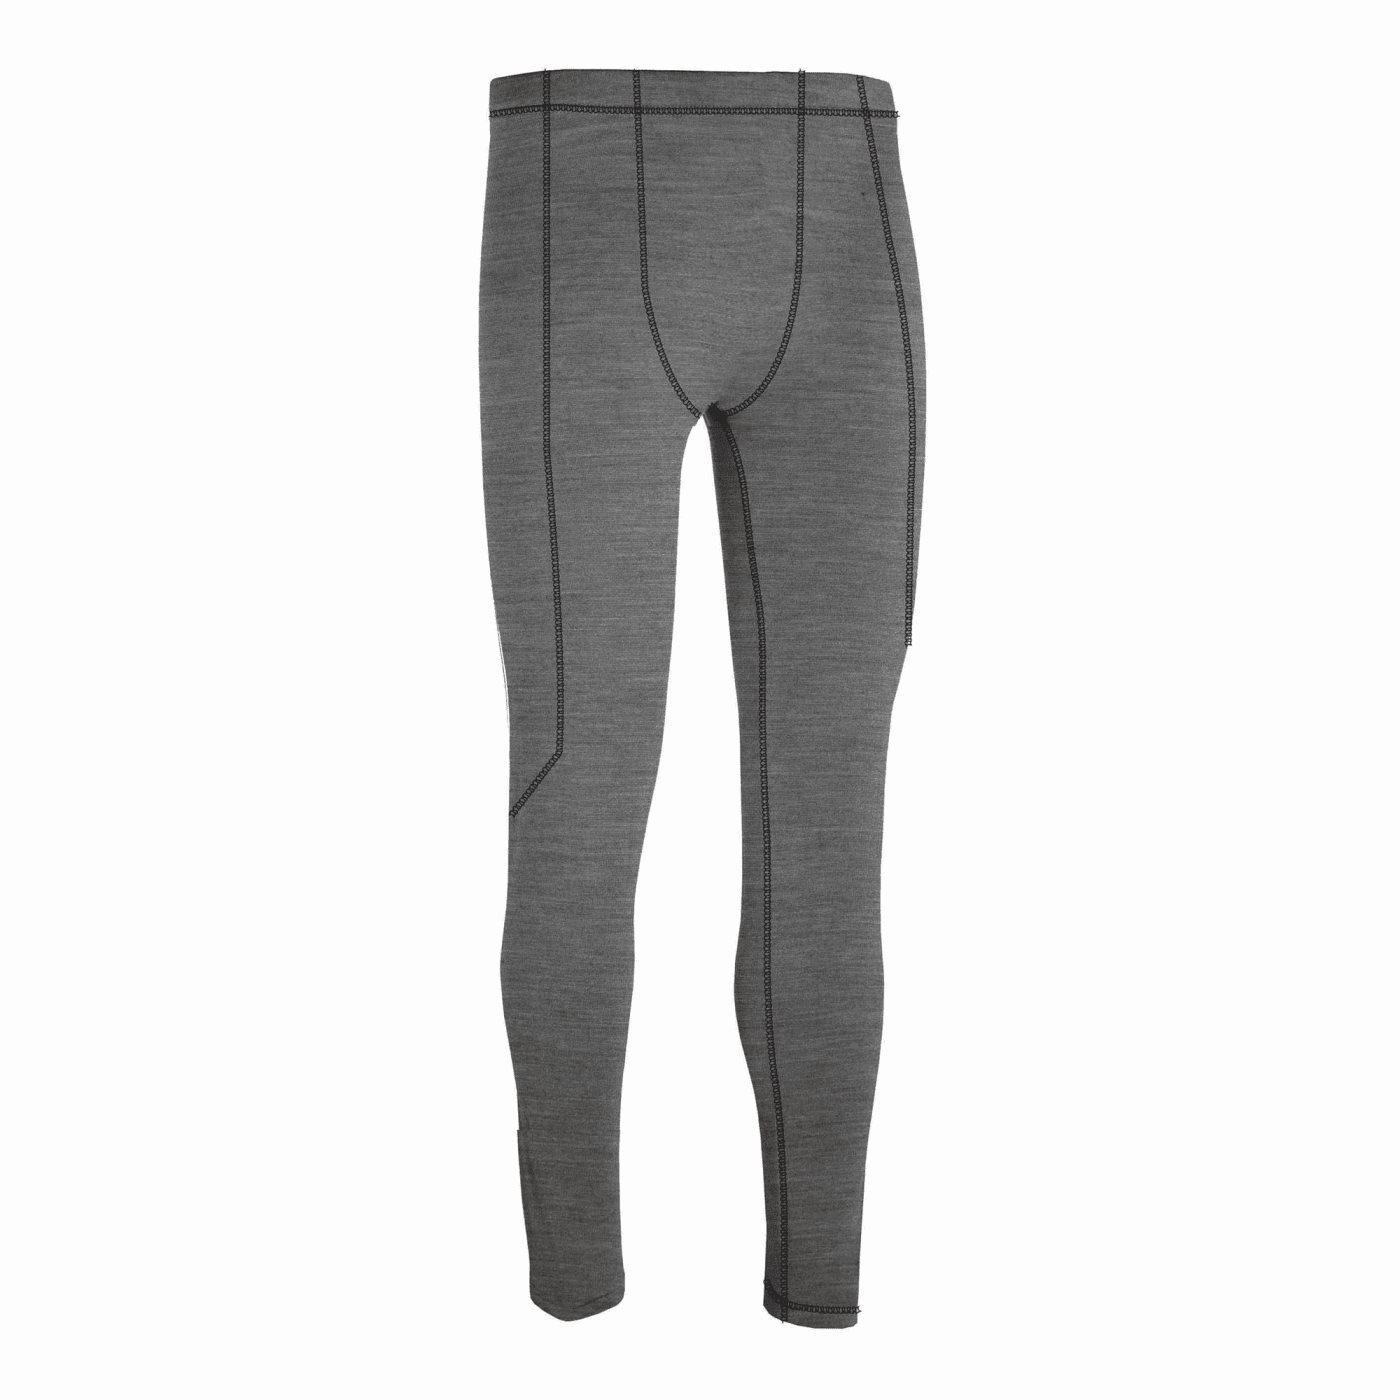 tucano urbano pantalone intimo termico calzamelio grigio melange taglia xl uomo